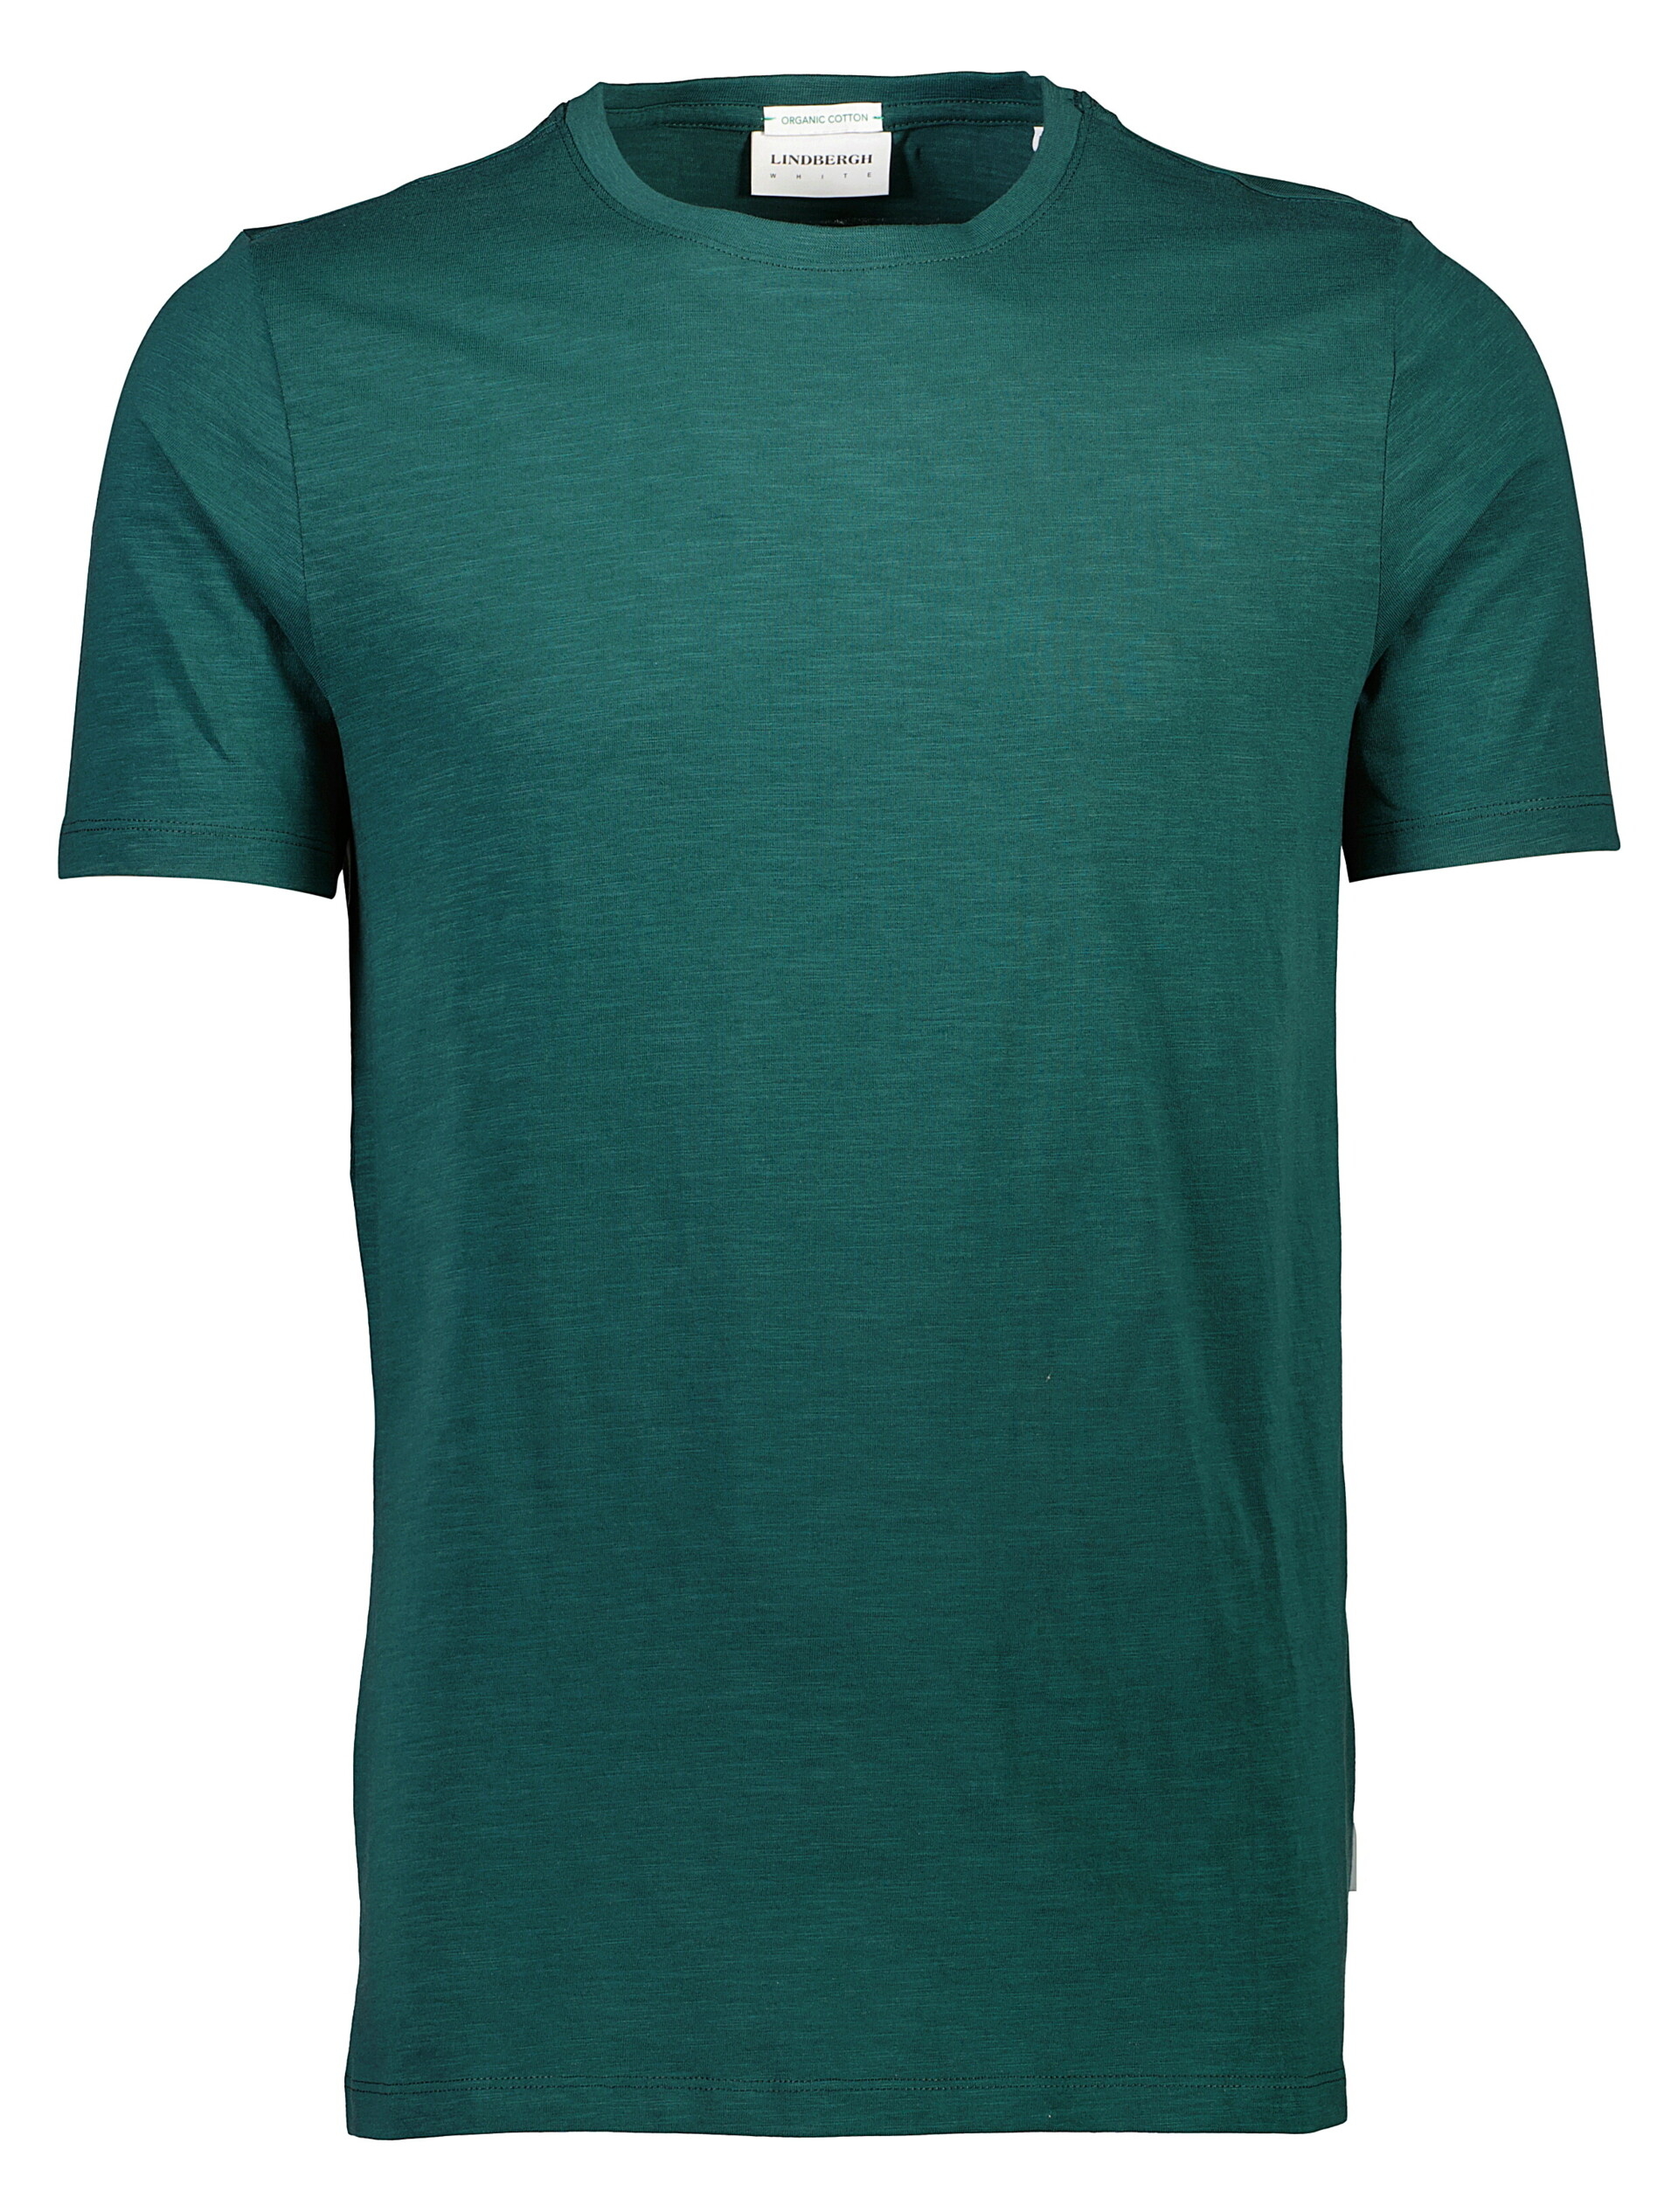 Lindbergh T-shirt grün / deep green